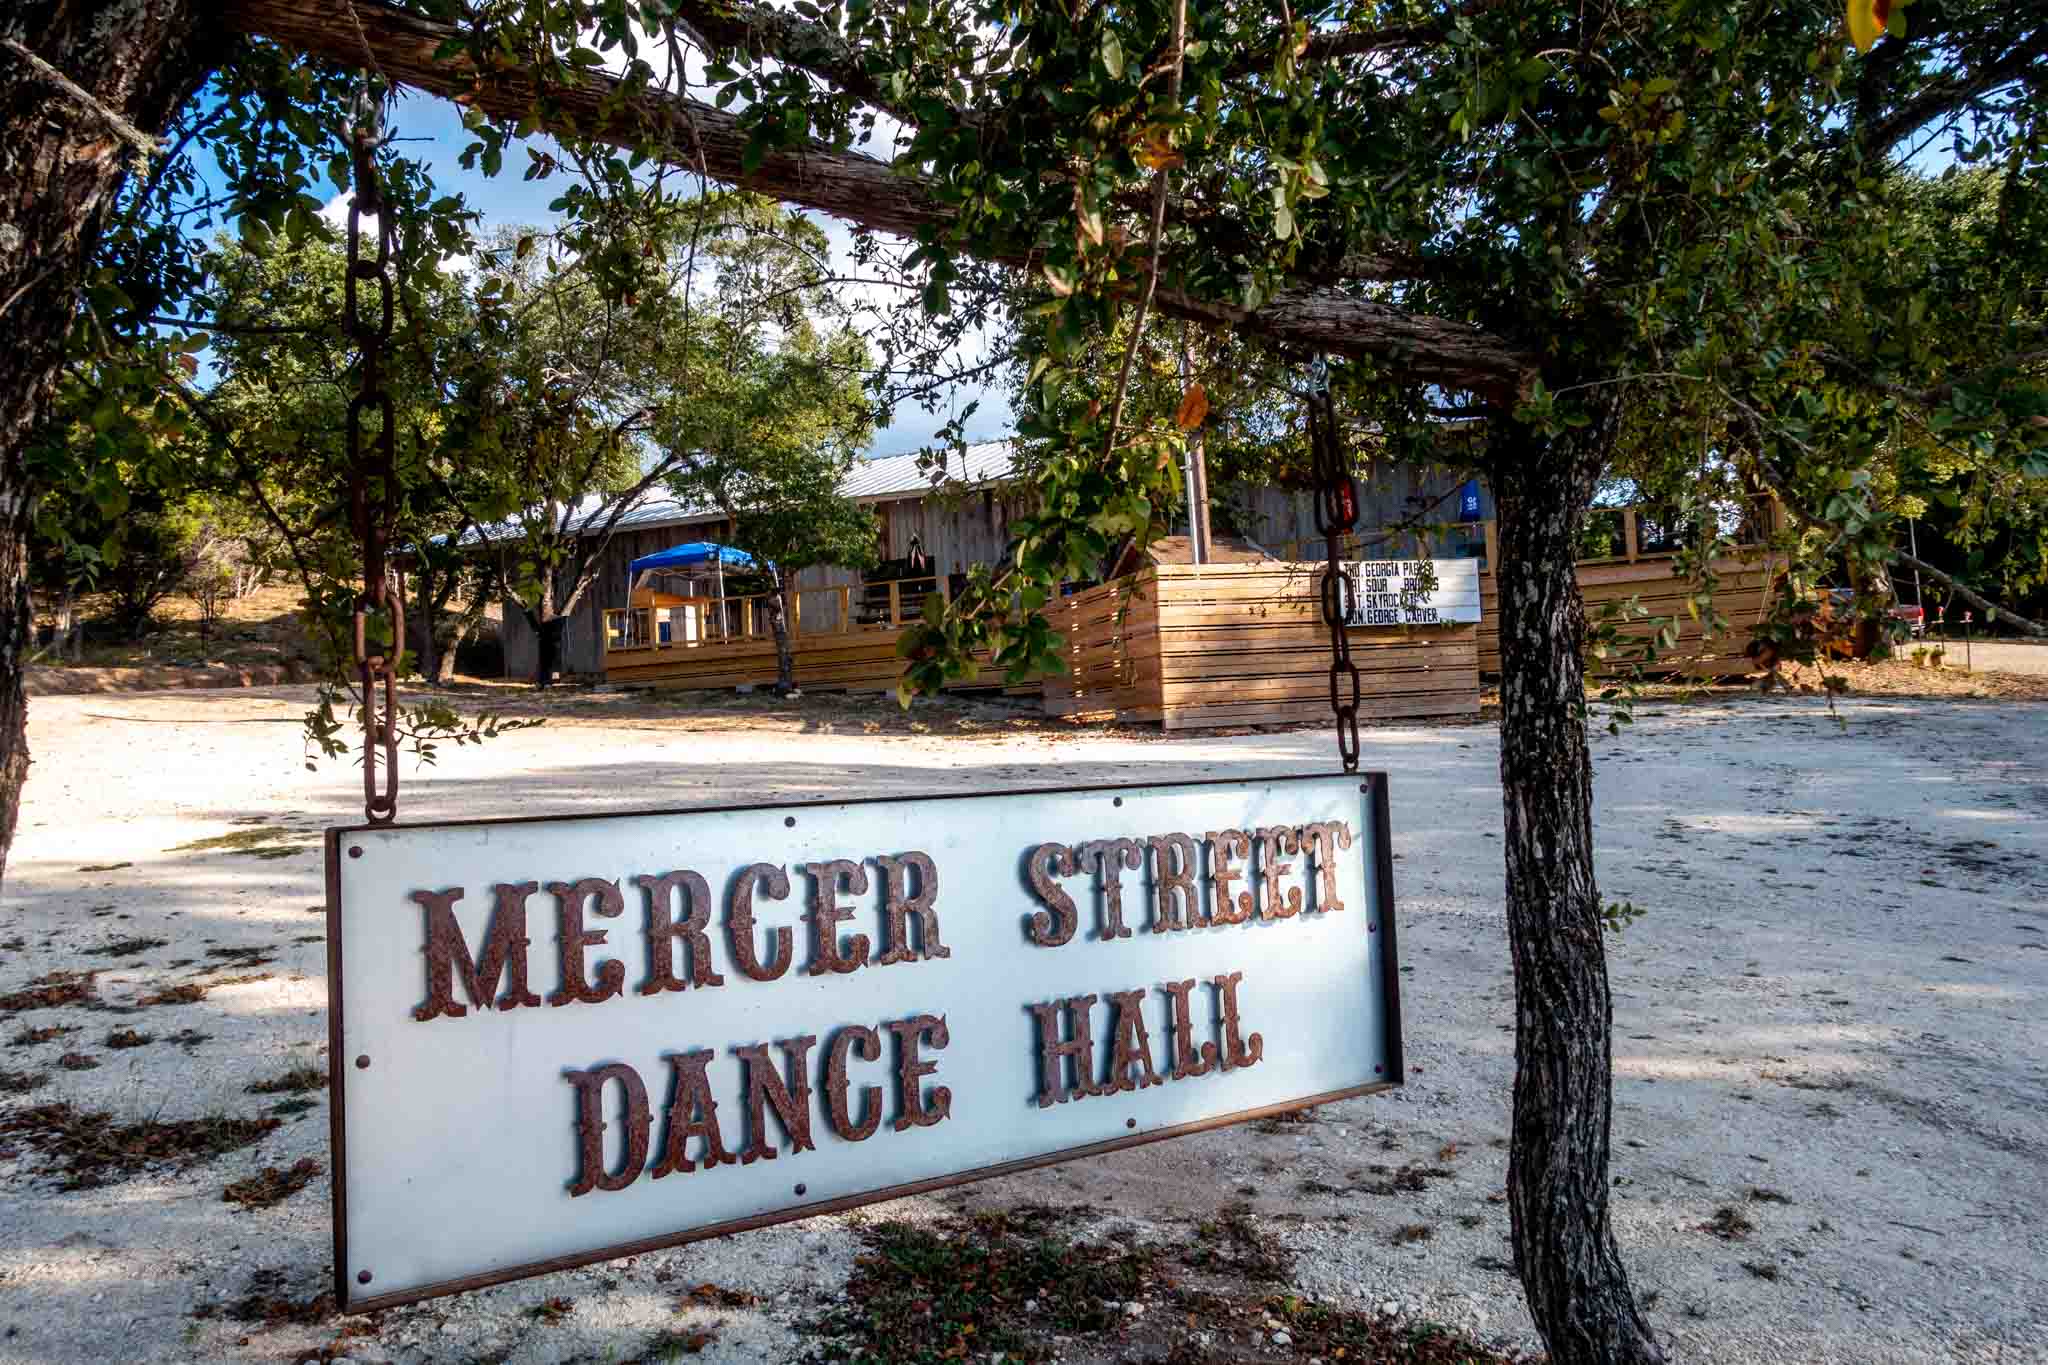 Mercer Street Dance Hall